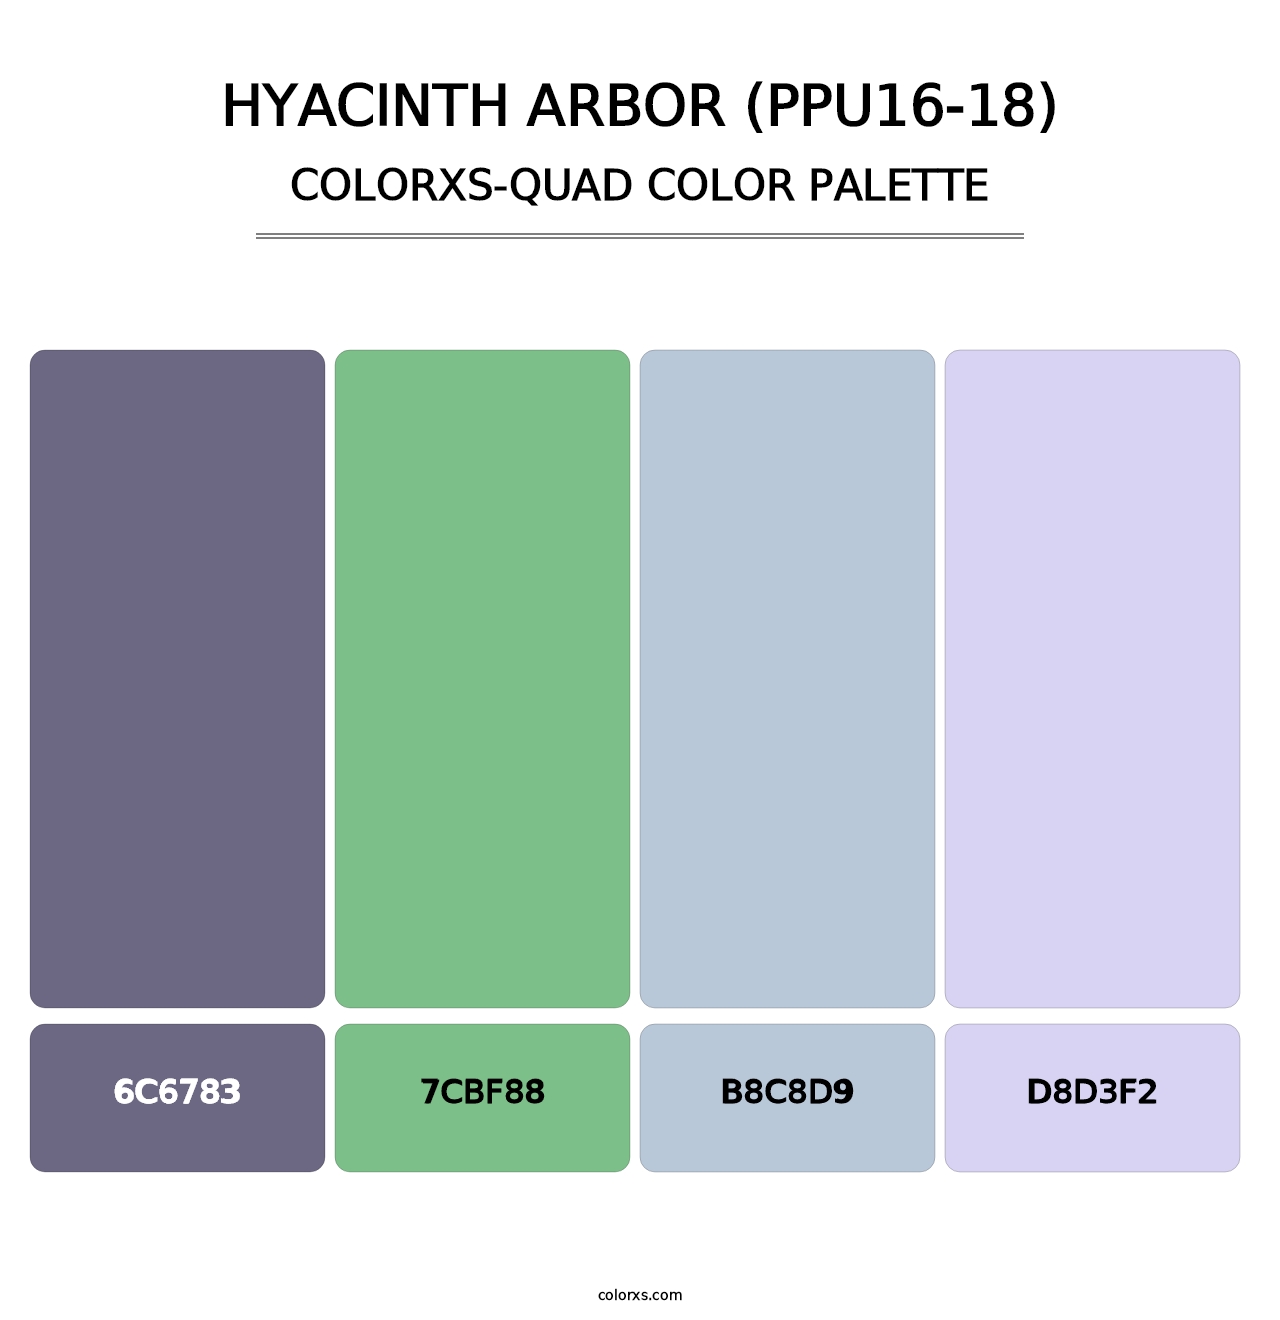 Hyacinth Arbor (PPU16-18) - Colorxs Quad Palette